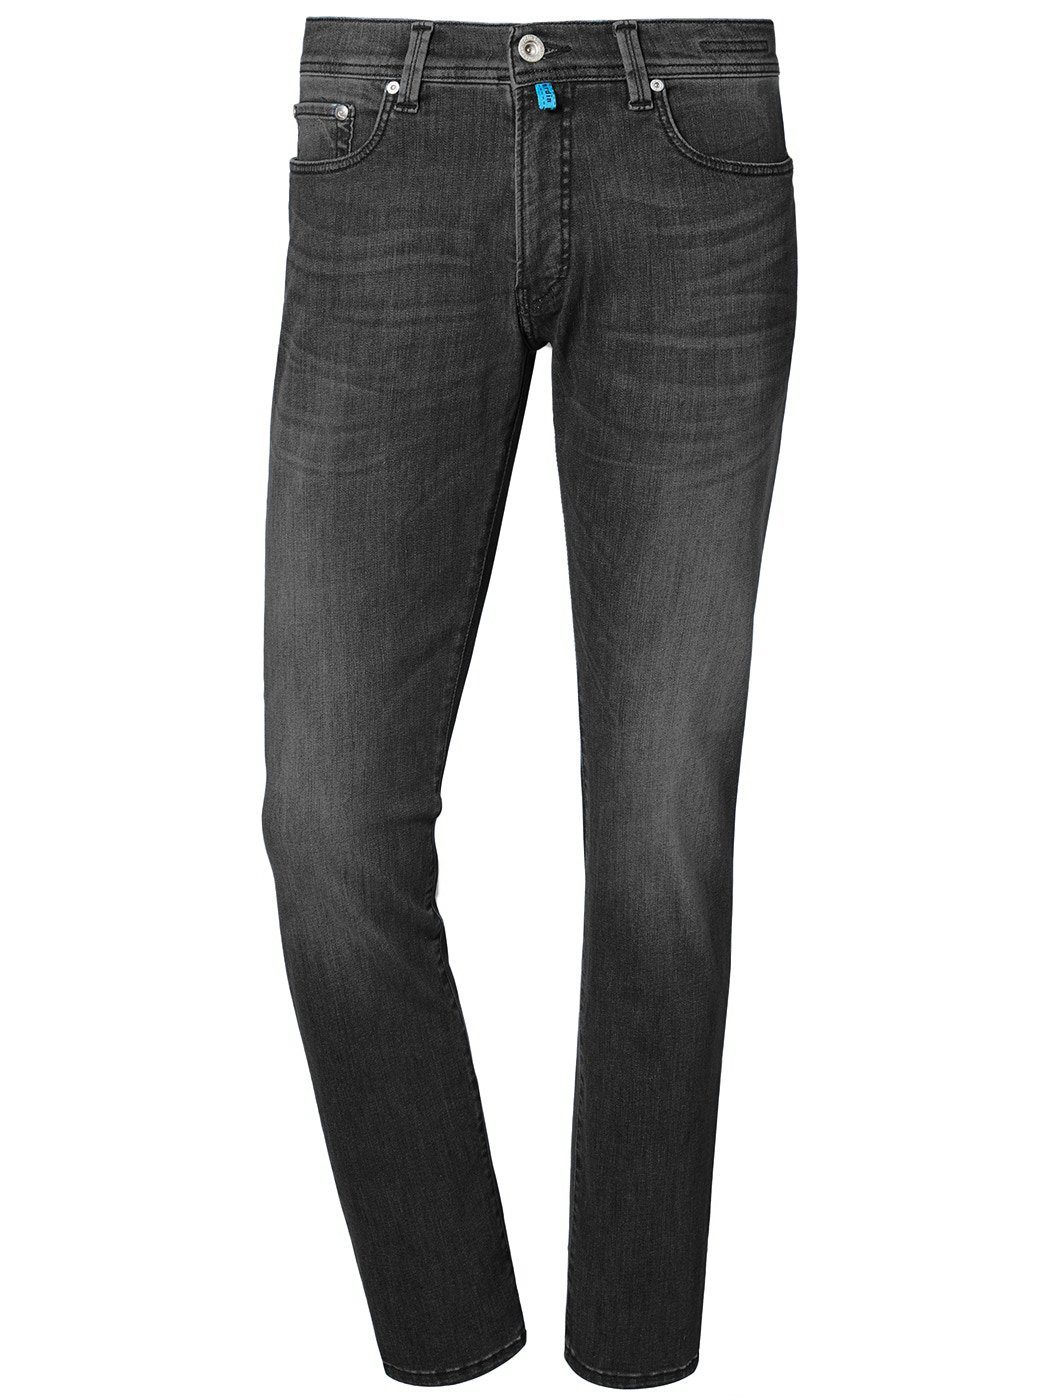 Pierre Cardin 5-Pocket-Jeans PIERRE CARDIN grey 3451 LYON used FUTUREFLEX vintage 8880.15 light